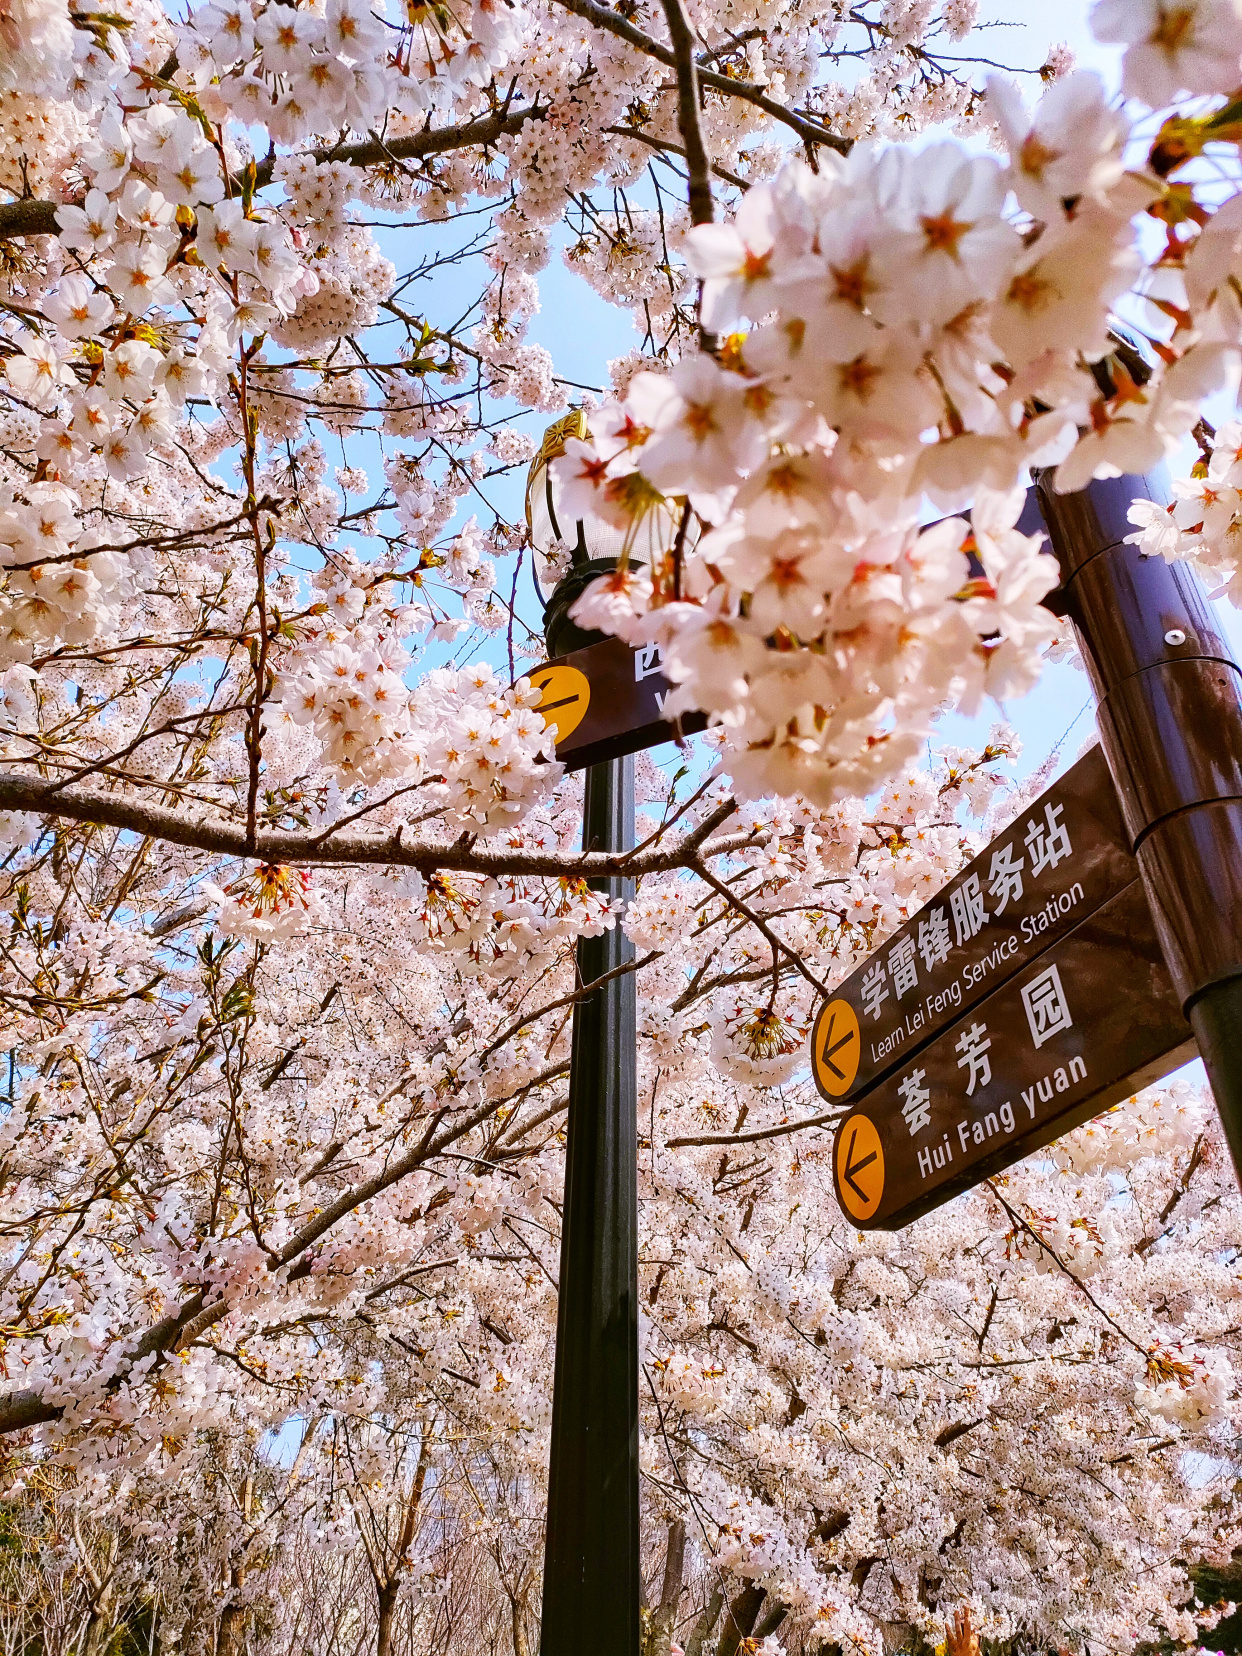 一整条街都是樱花,大连劳动公园太美了